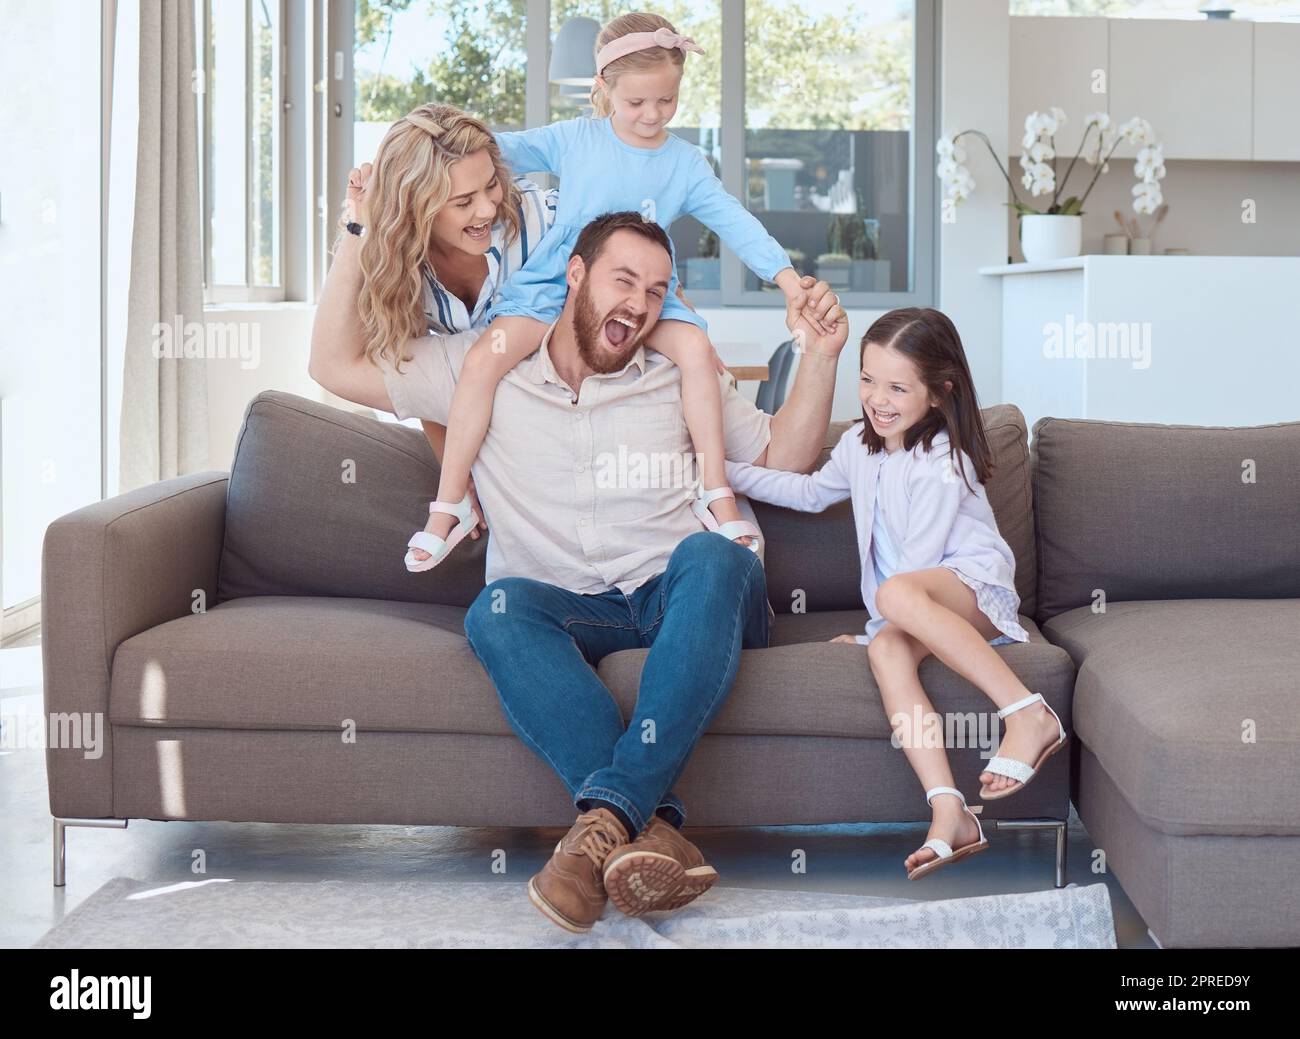 Glückliche junge weiße Familie, die zu Hause auf einem Sofa im Wohnzimmer sitzt und spielt. Süße kleine Mädchen und ihre Mutter ärgern ihren Vater Whii Stockfoto